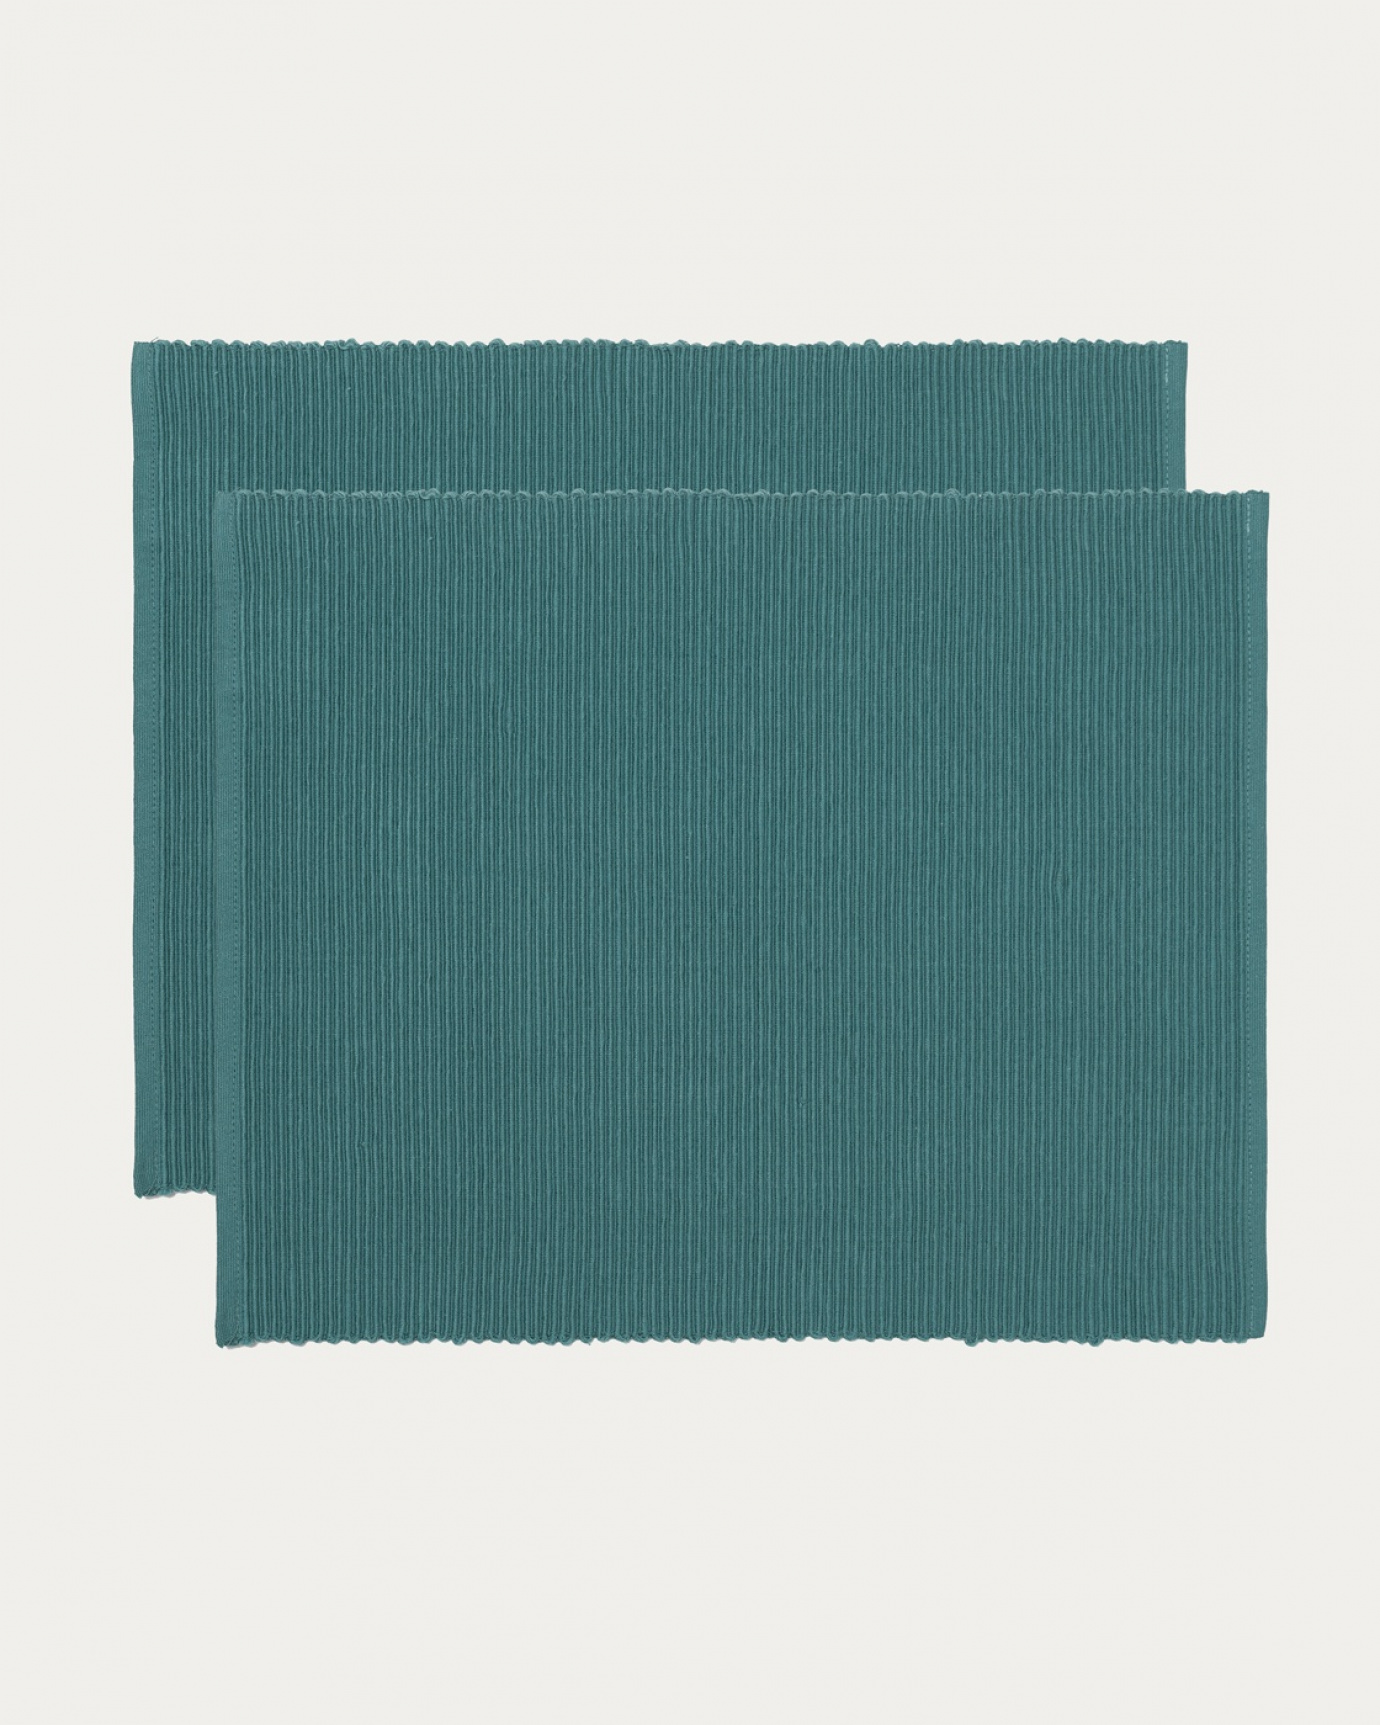 Image du produit set de table UNI gris foncé turquoise en coton doux de qualité côtelée de LINUM DESIGN. Taille 35 x 46 cm et vendu en lot de 2.